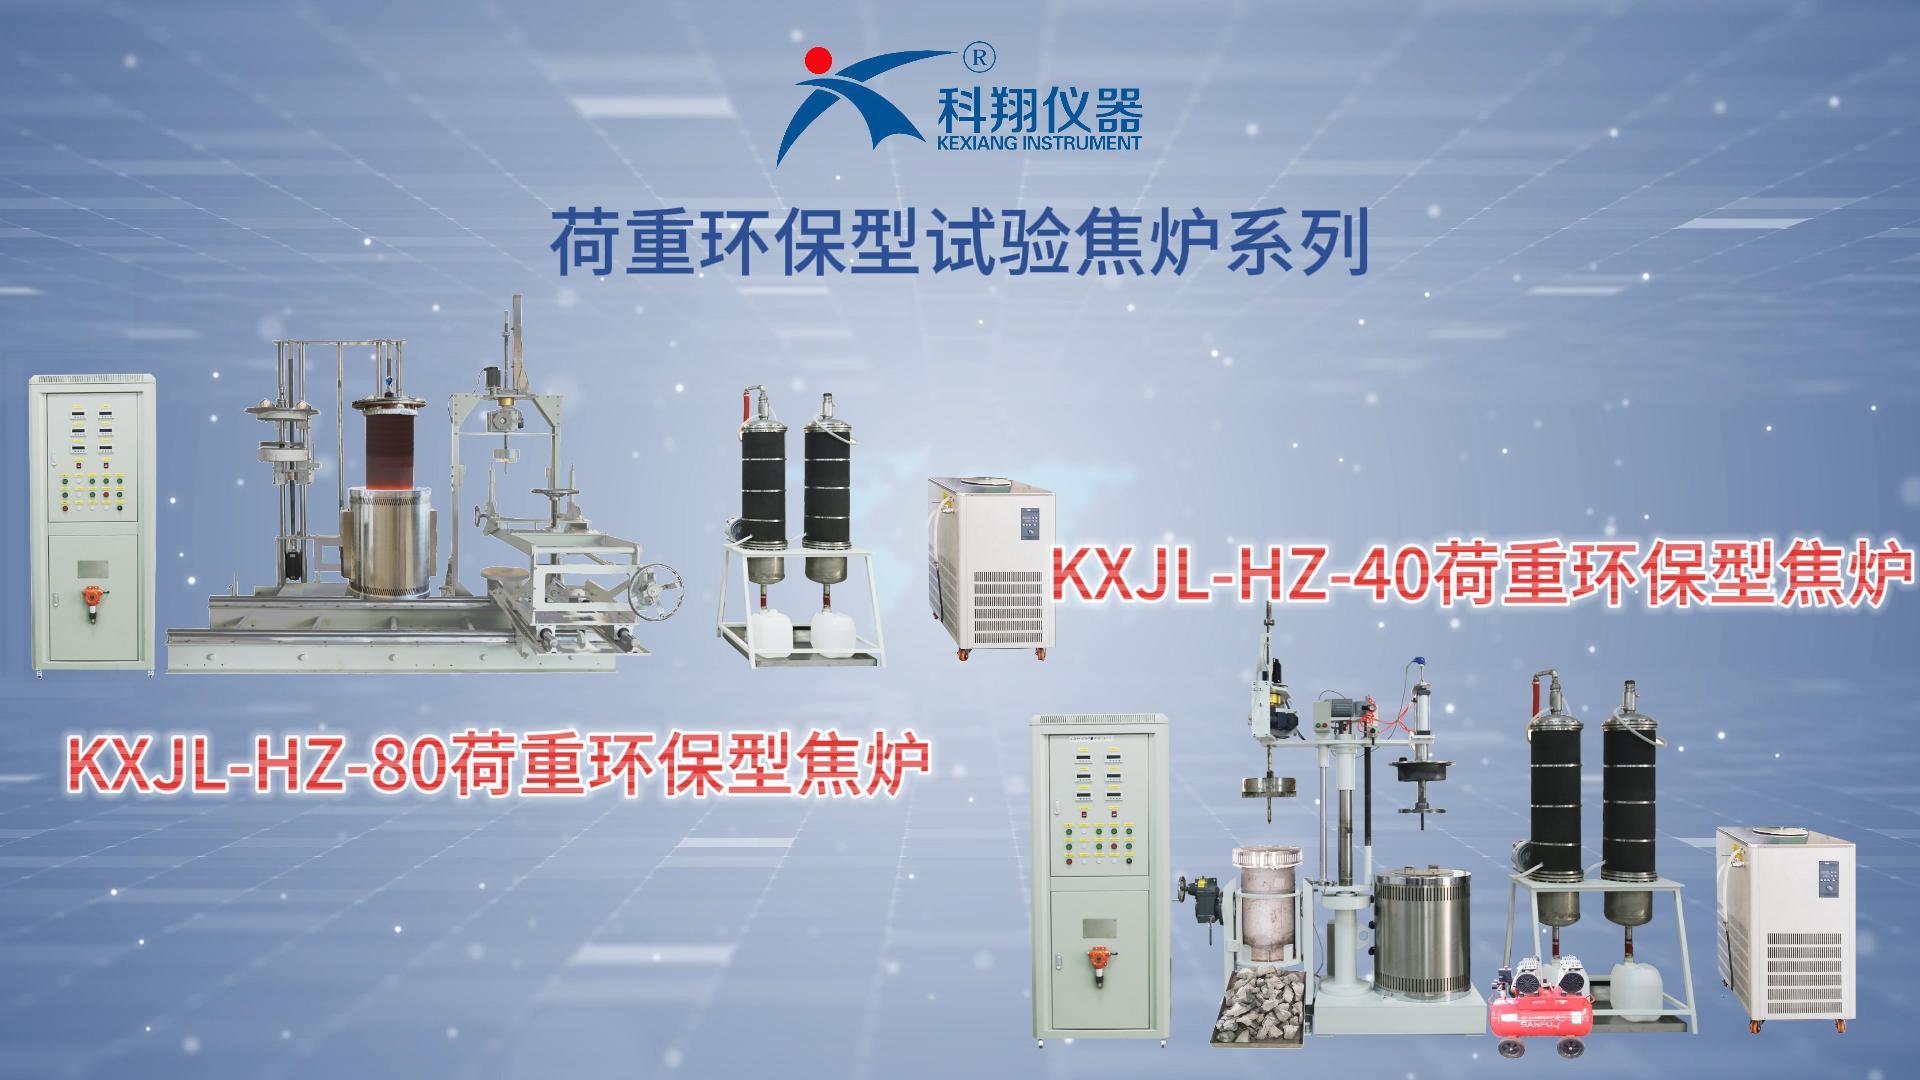 KX-JL-HZ系列荷重式環保型試驗焦爐